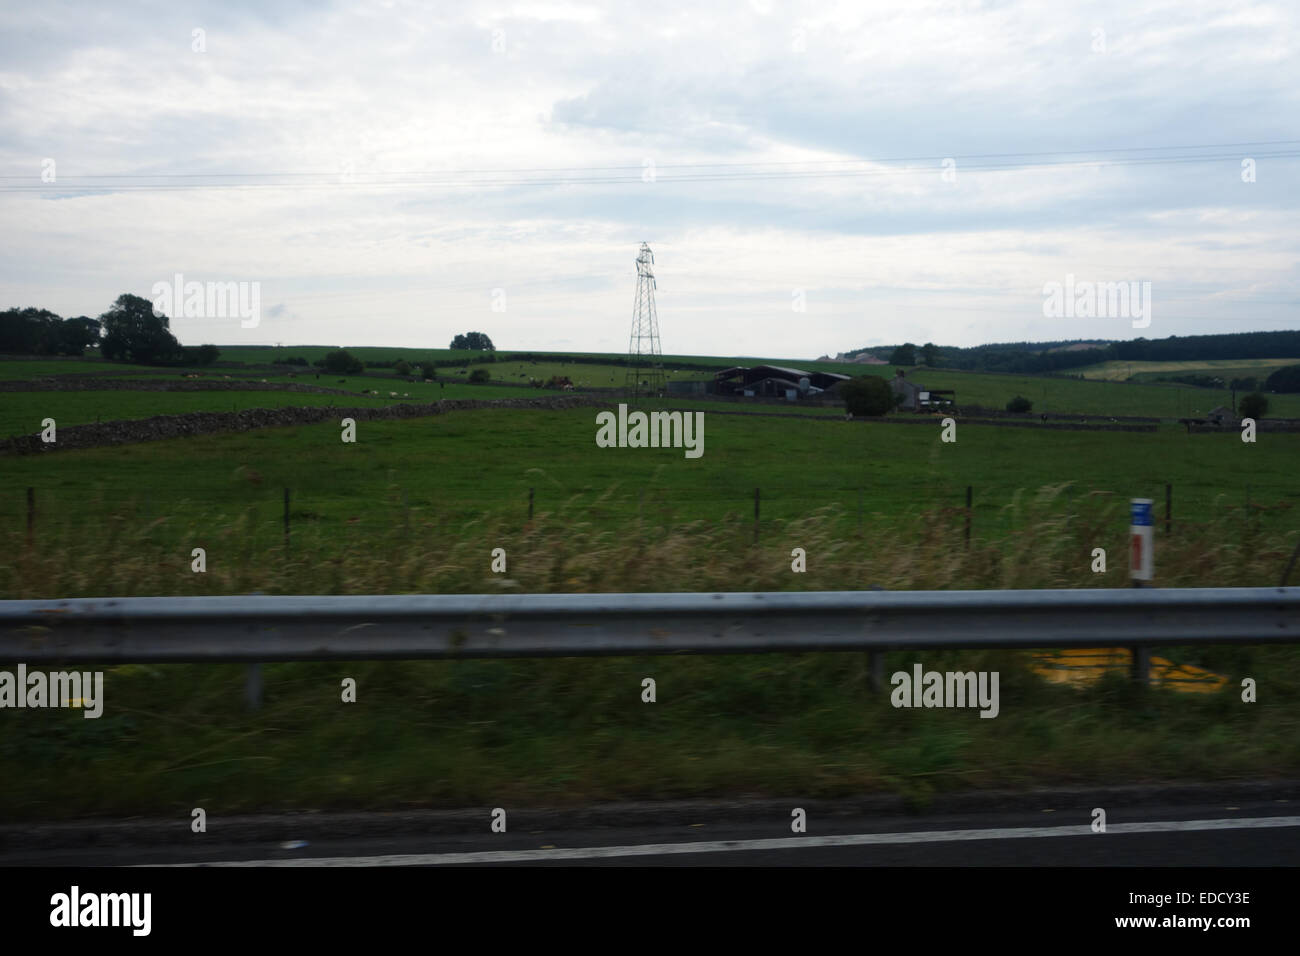 Autobahn Reise Windsor Glasgow unterschiedlicher Bedingungen M40/M6/M74 Juli 2014 Sonne Regen Wind viel wenig anderen Verkehr, Landschaft Stockfoto